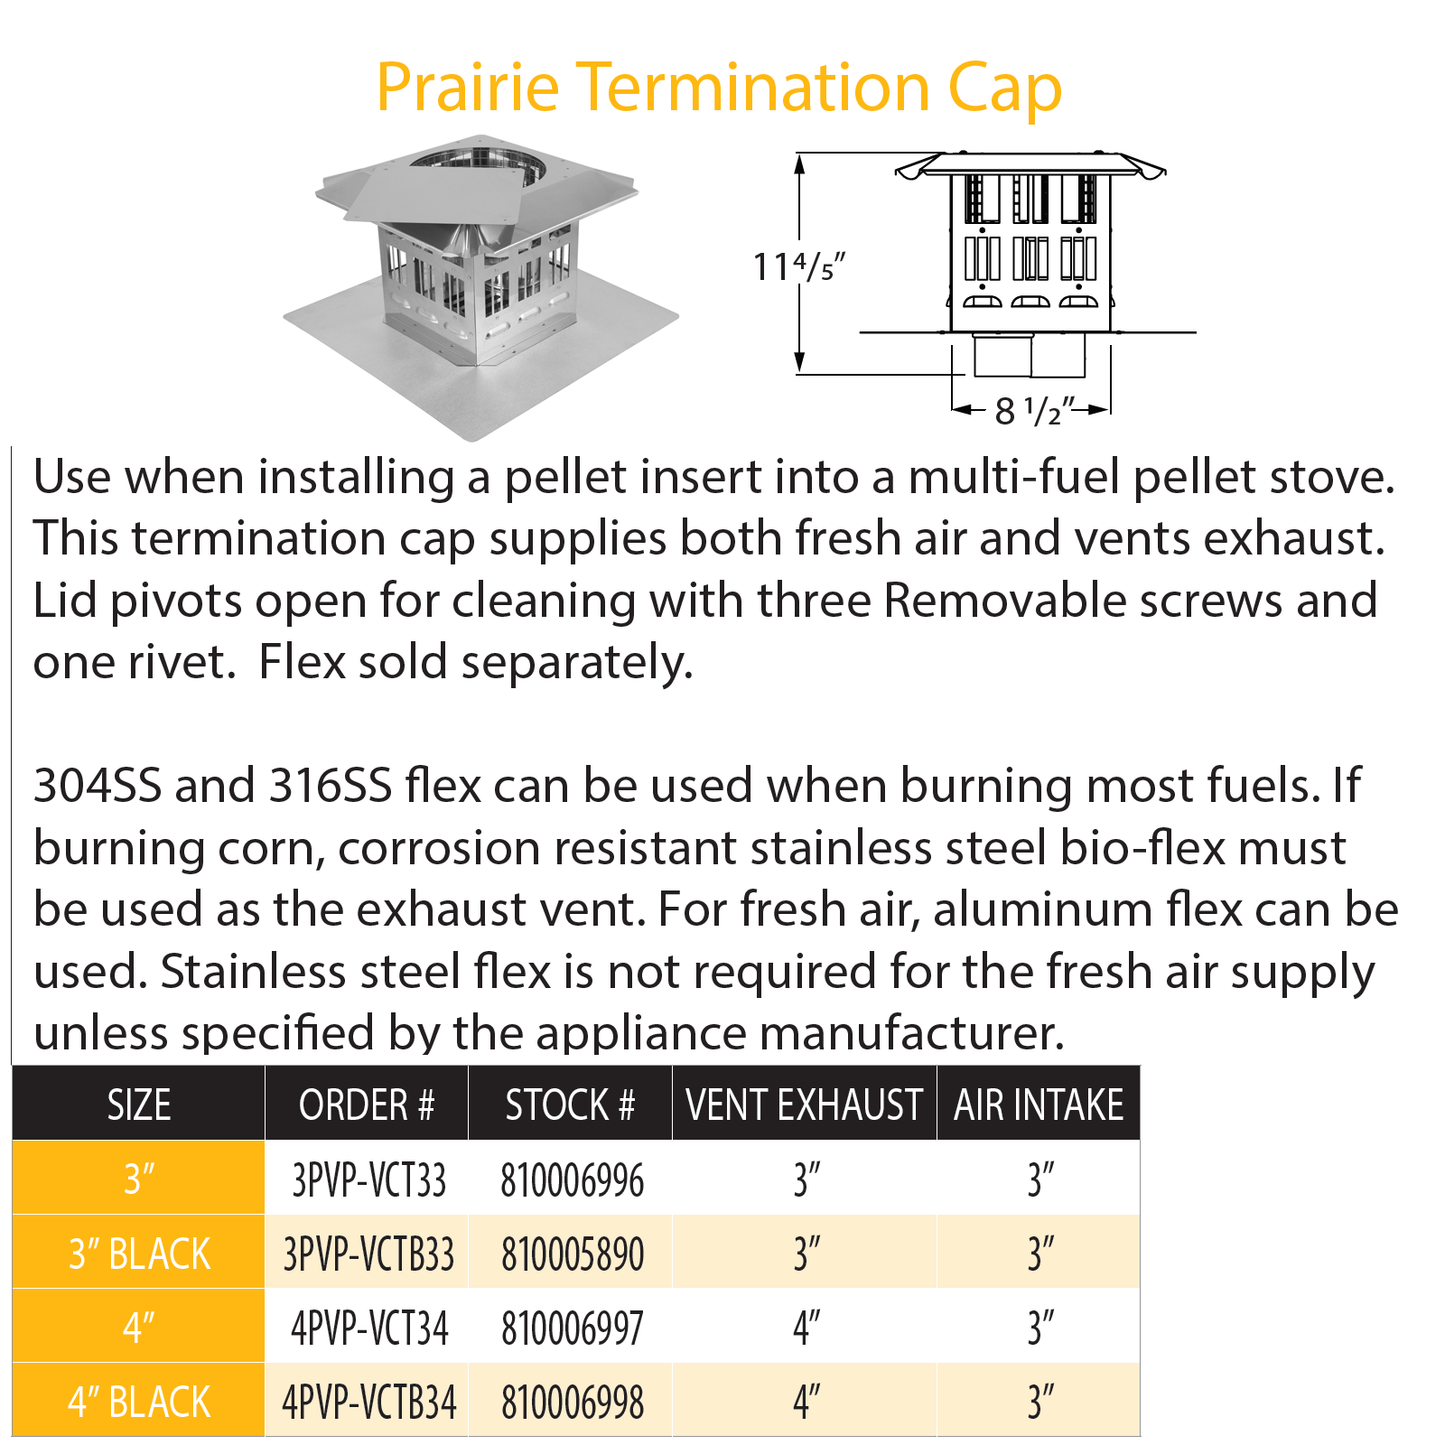 DuraVent Pellet Vent Pro 3" Prairie Term Cap SS | 3PVP-VCT33